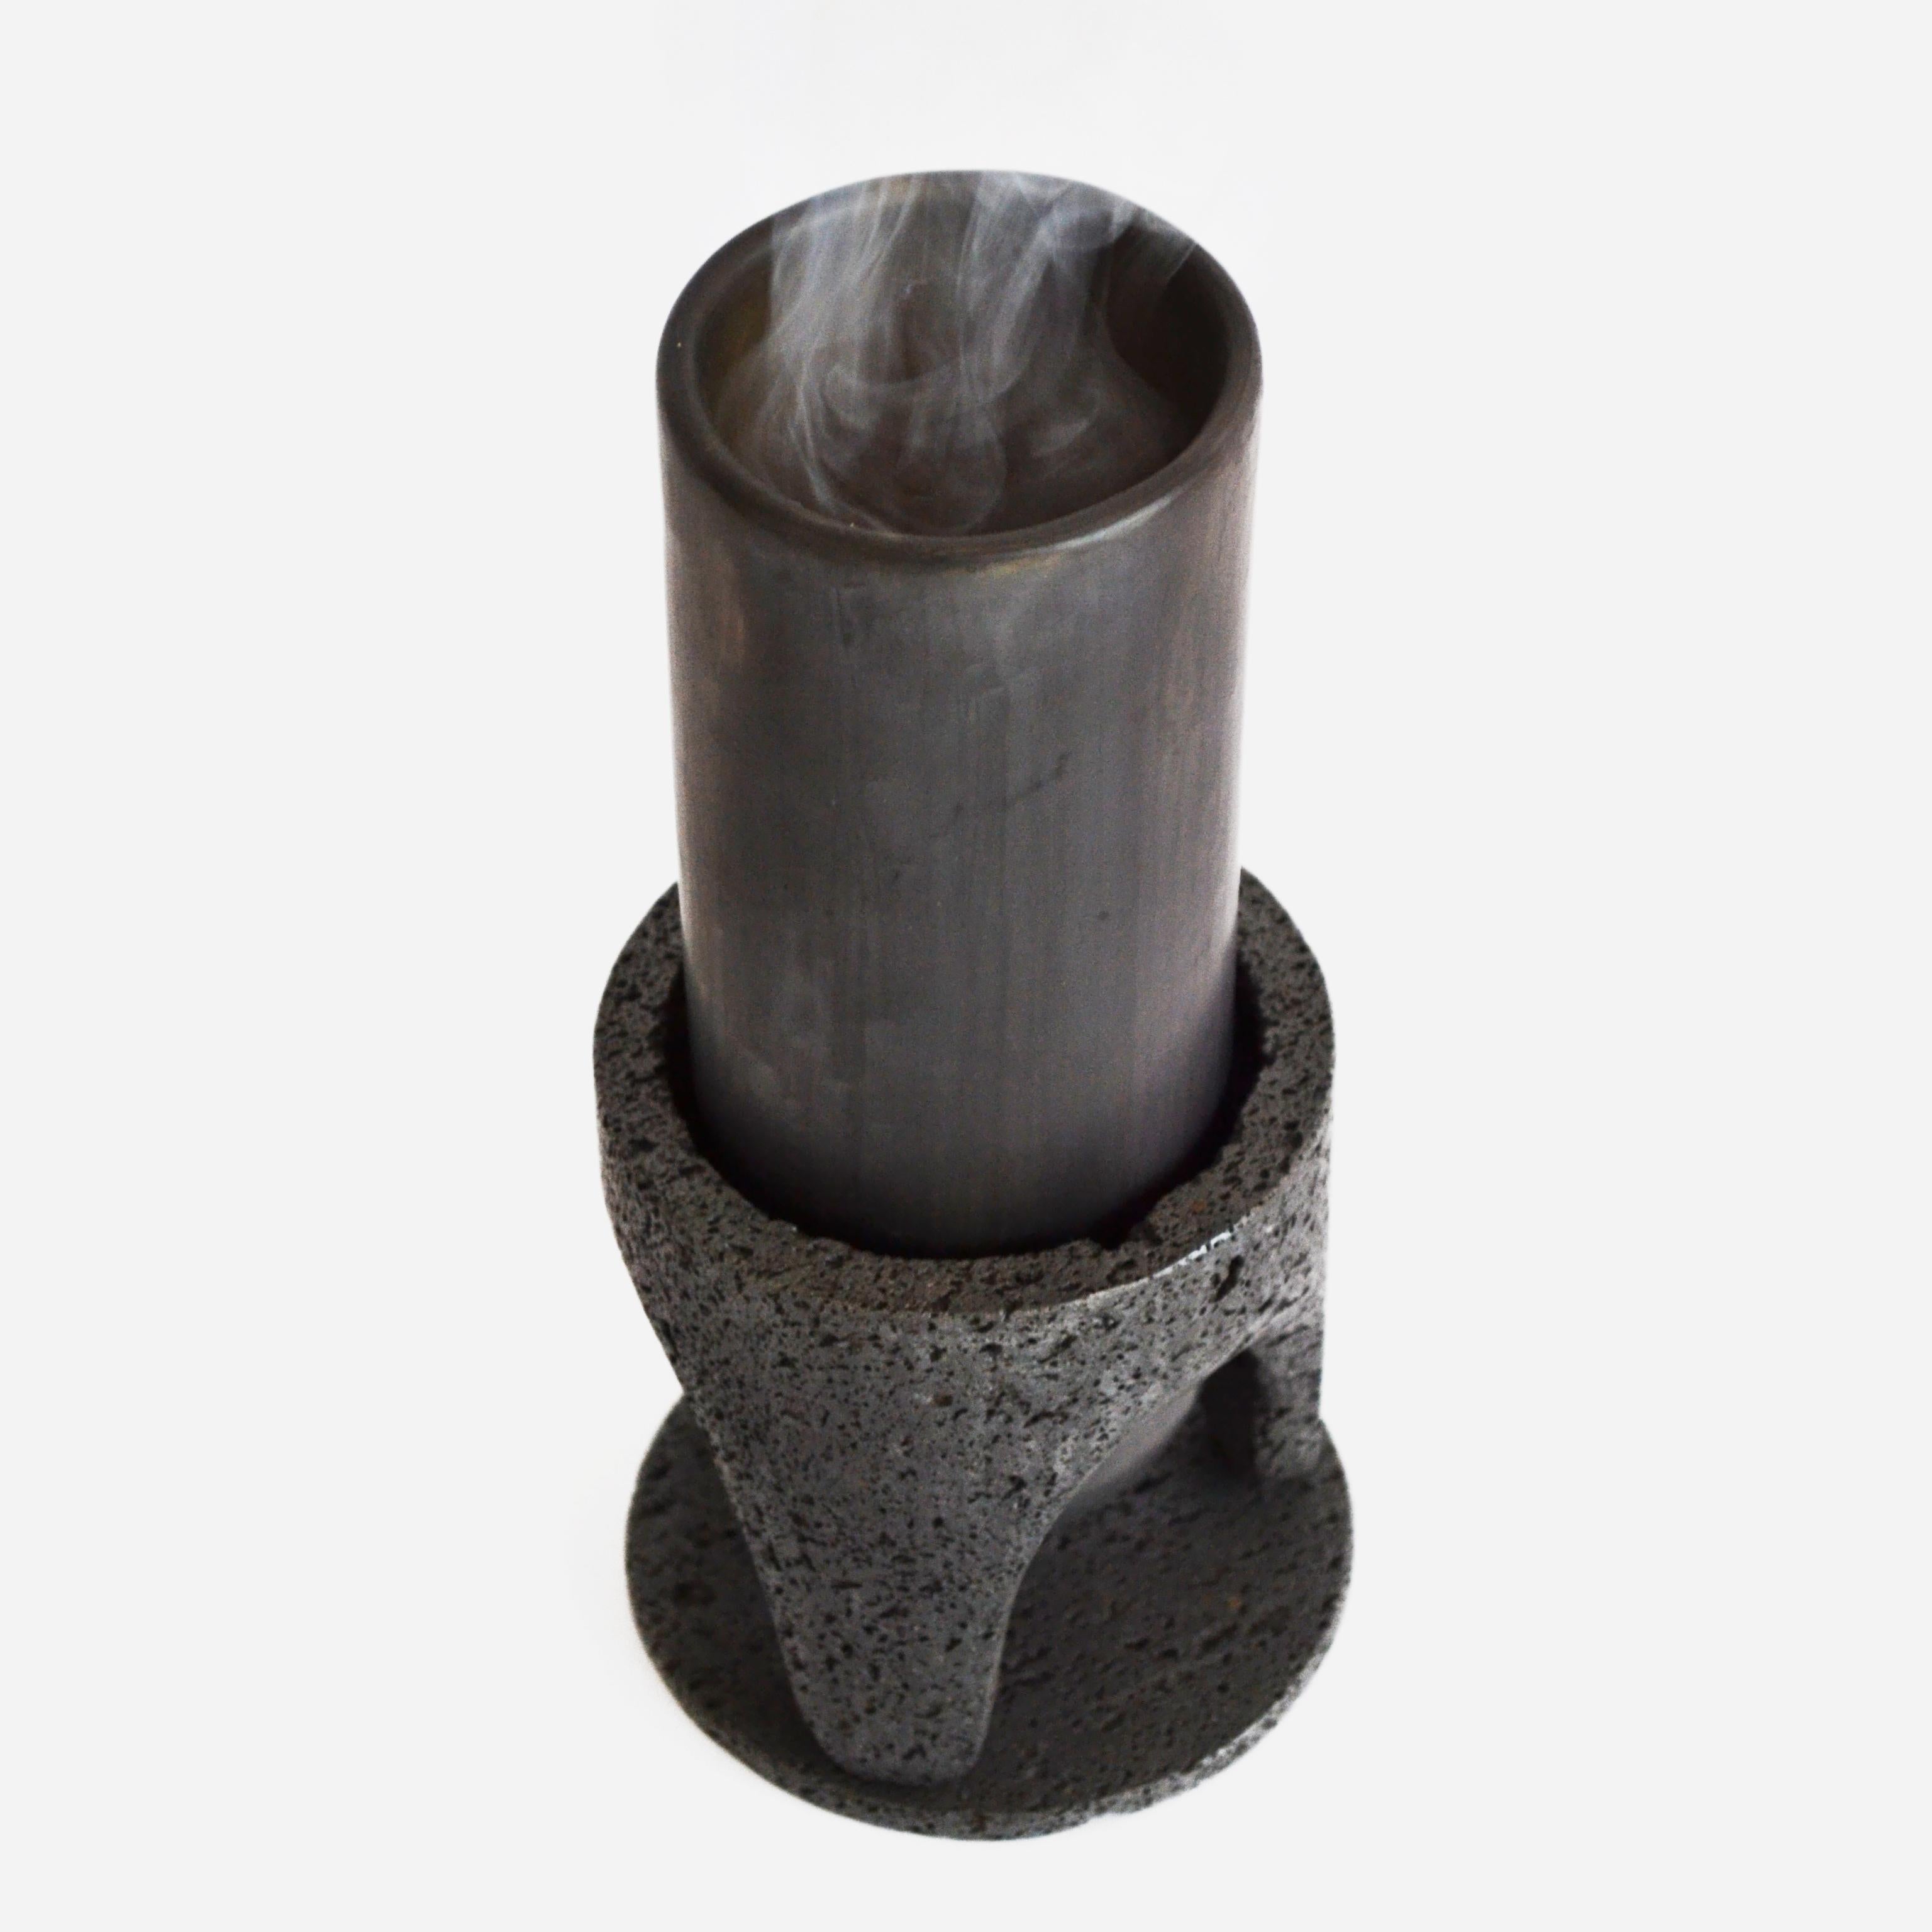 Manantial-Vase von Omar Ortiz, 2021
Abmessungen: H21 x B10cm
MATERIALIEN: Vulkanisches Gestein, schwarzer Ton.

Ist eine Vase, die durch einen handgeschnitzten Steinsockel vom Boden abgehoben wird. Die Vase hält Feuer unter 950 Grad stand, so dass